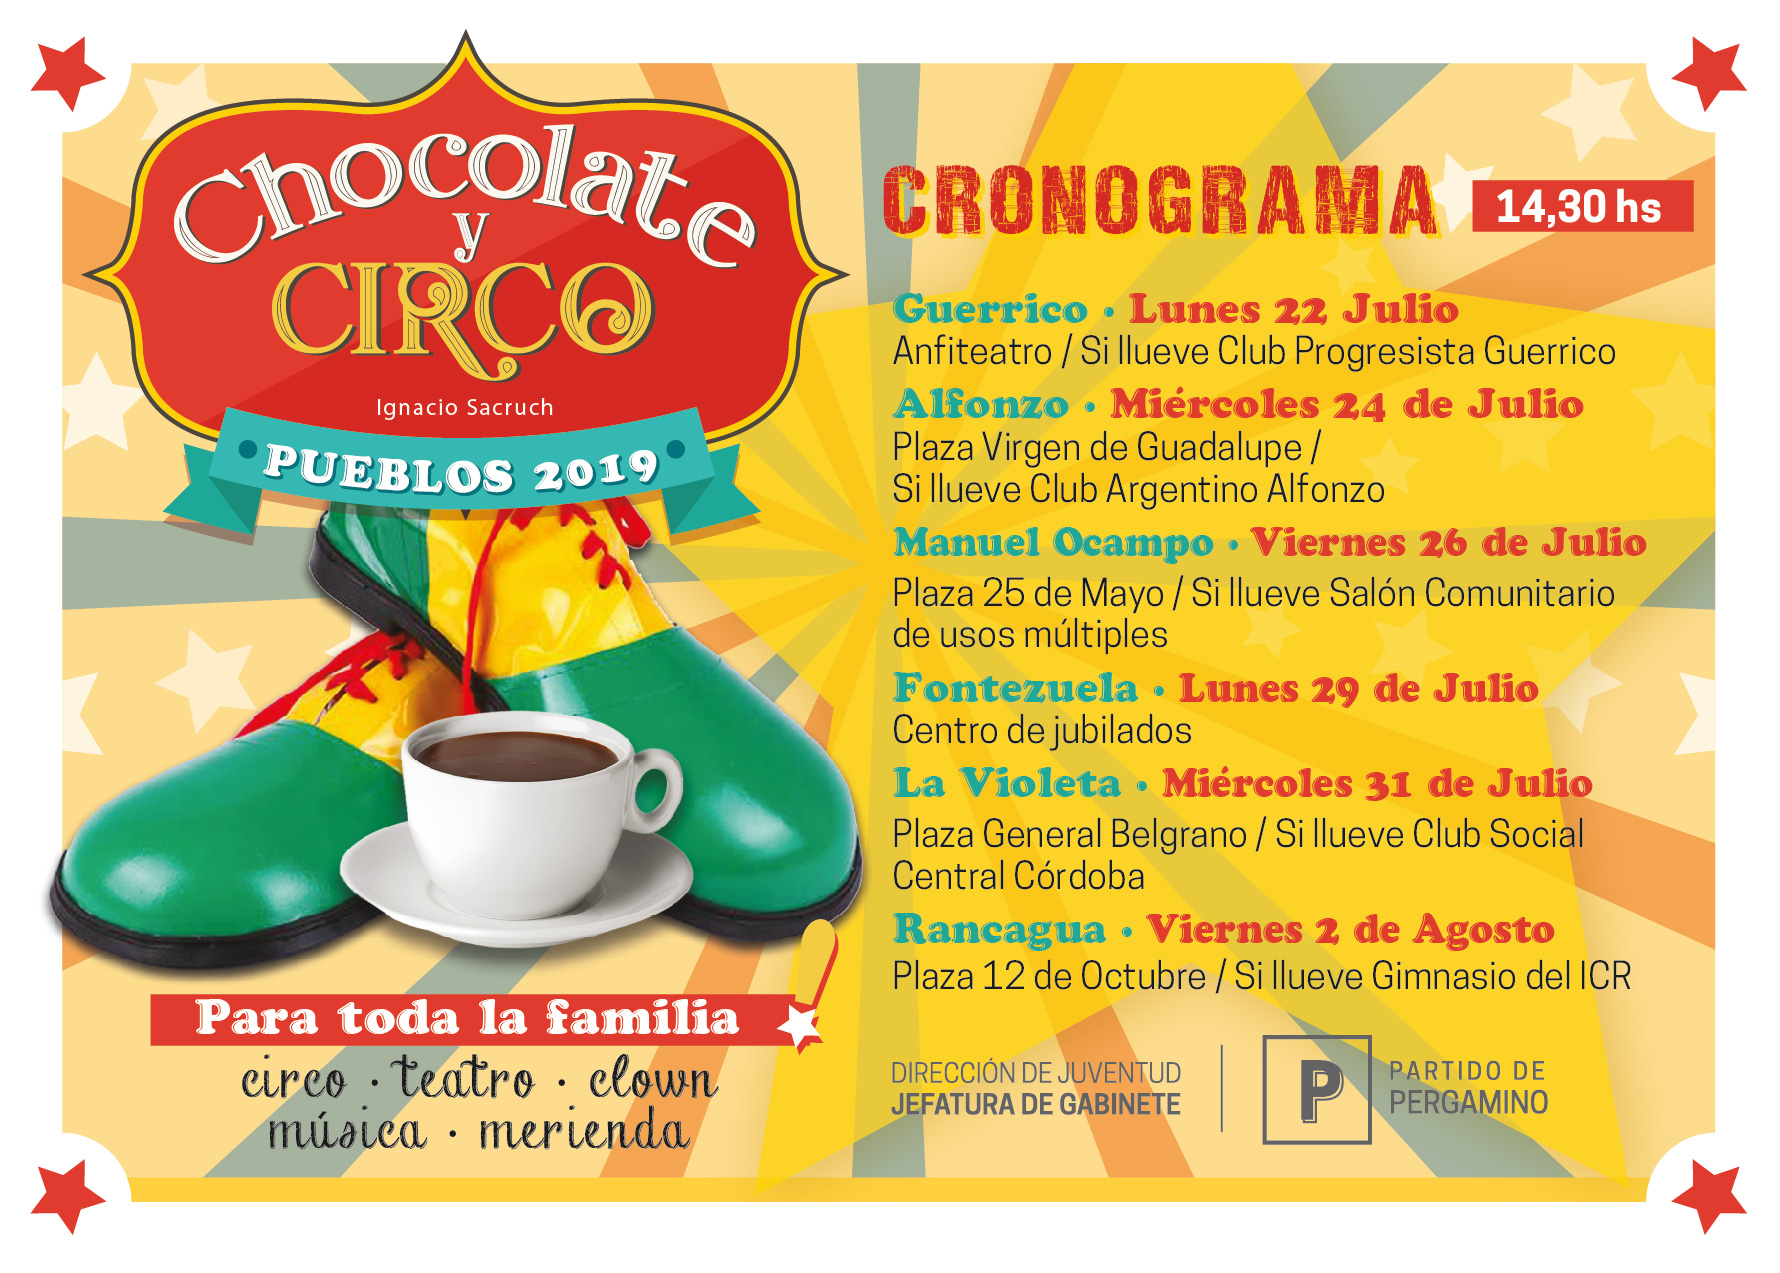 CHOCOLATE Y CIRCO 2019